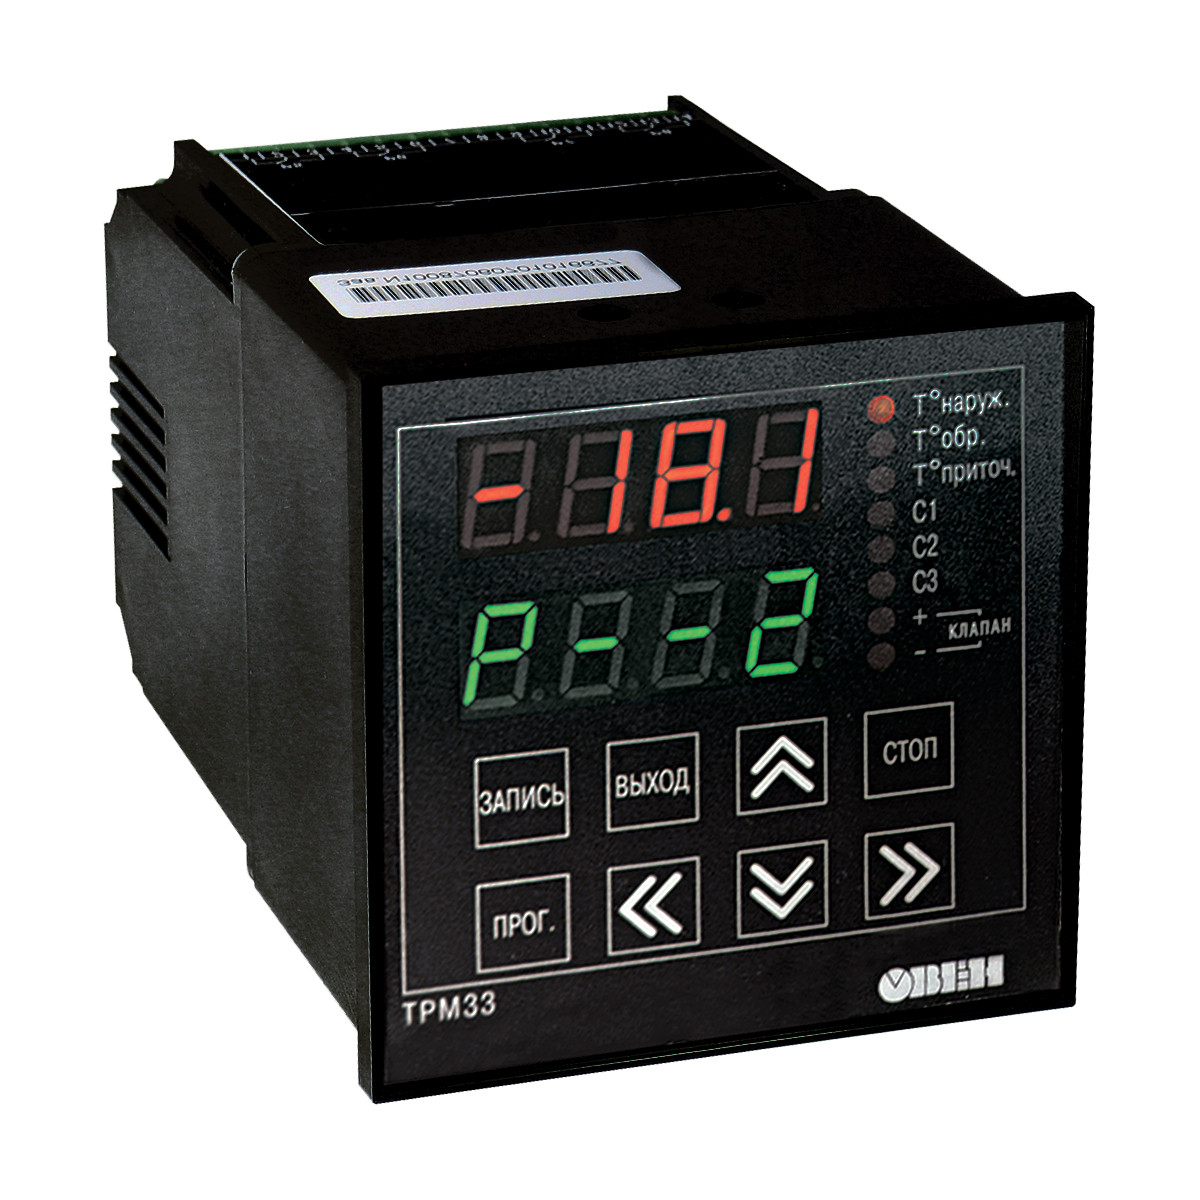 ТРМ33 - Контроллер для регулирования температуры в системах отопления с приточной вентиляцией RS232 или USB